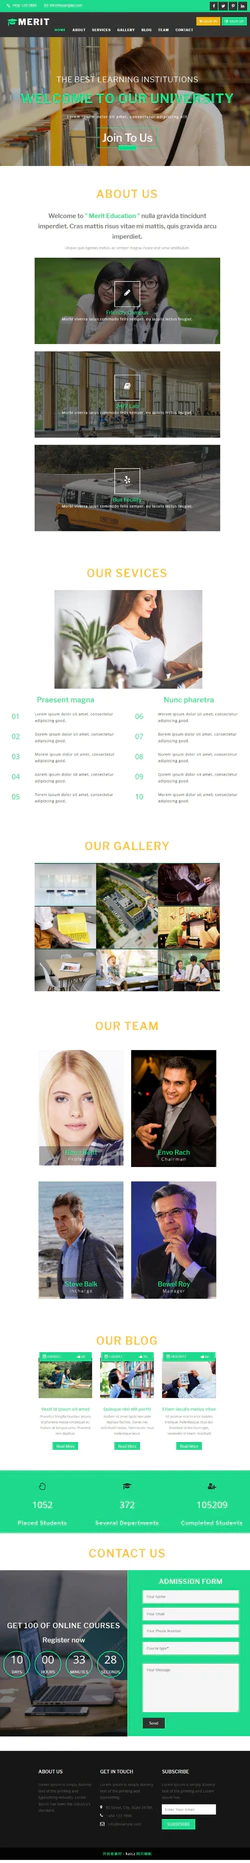 H5人才精英培训机构官方网站企业模板封面图